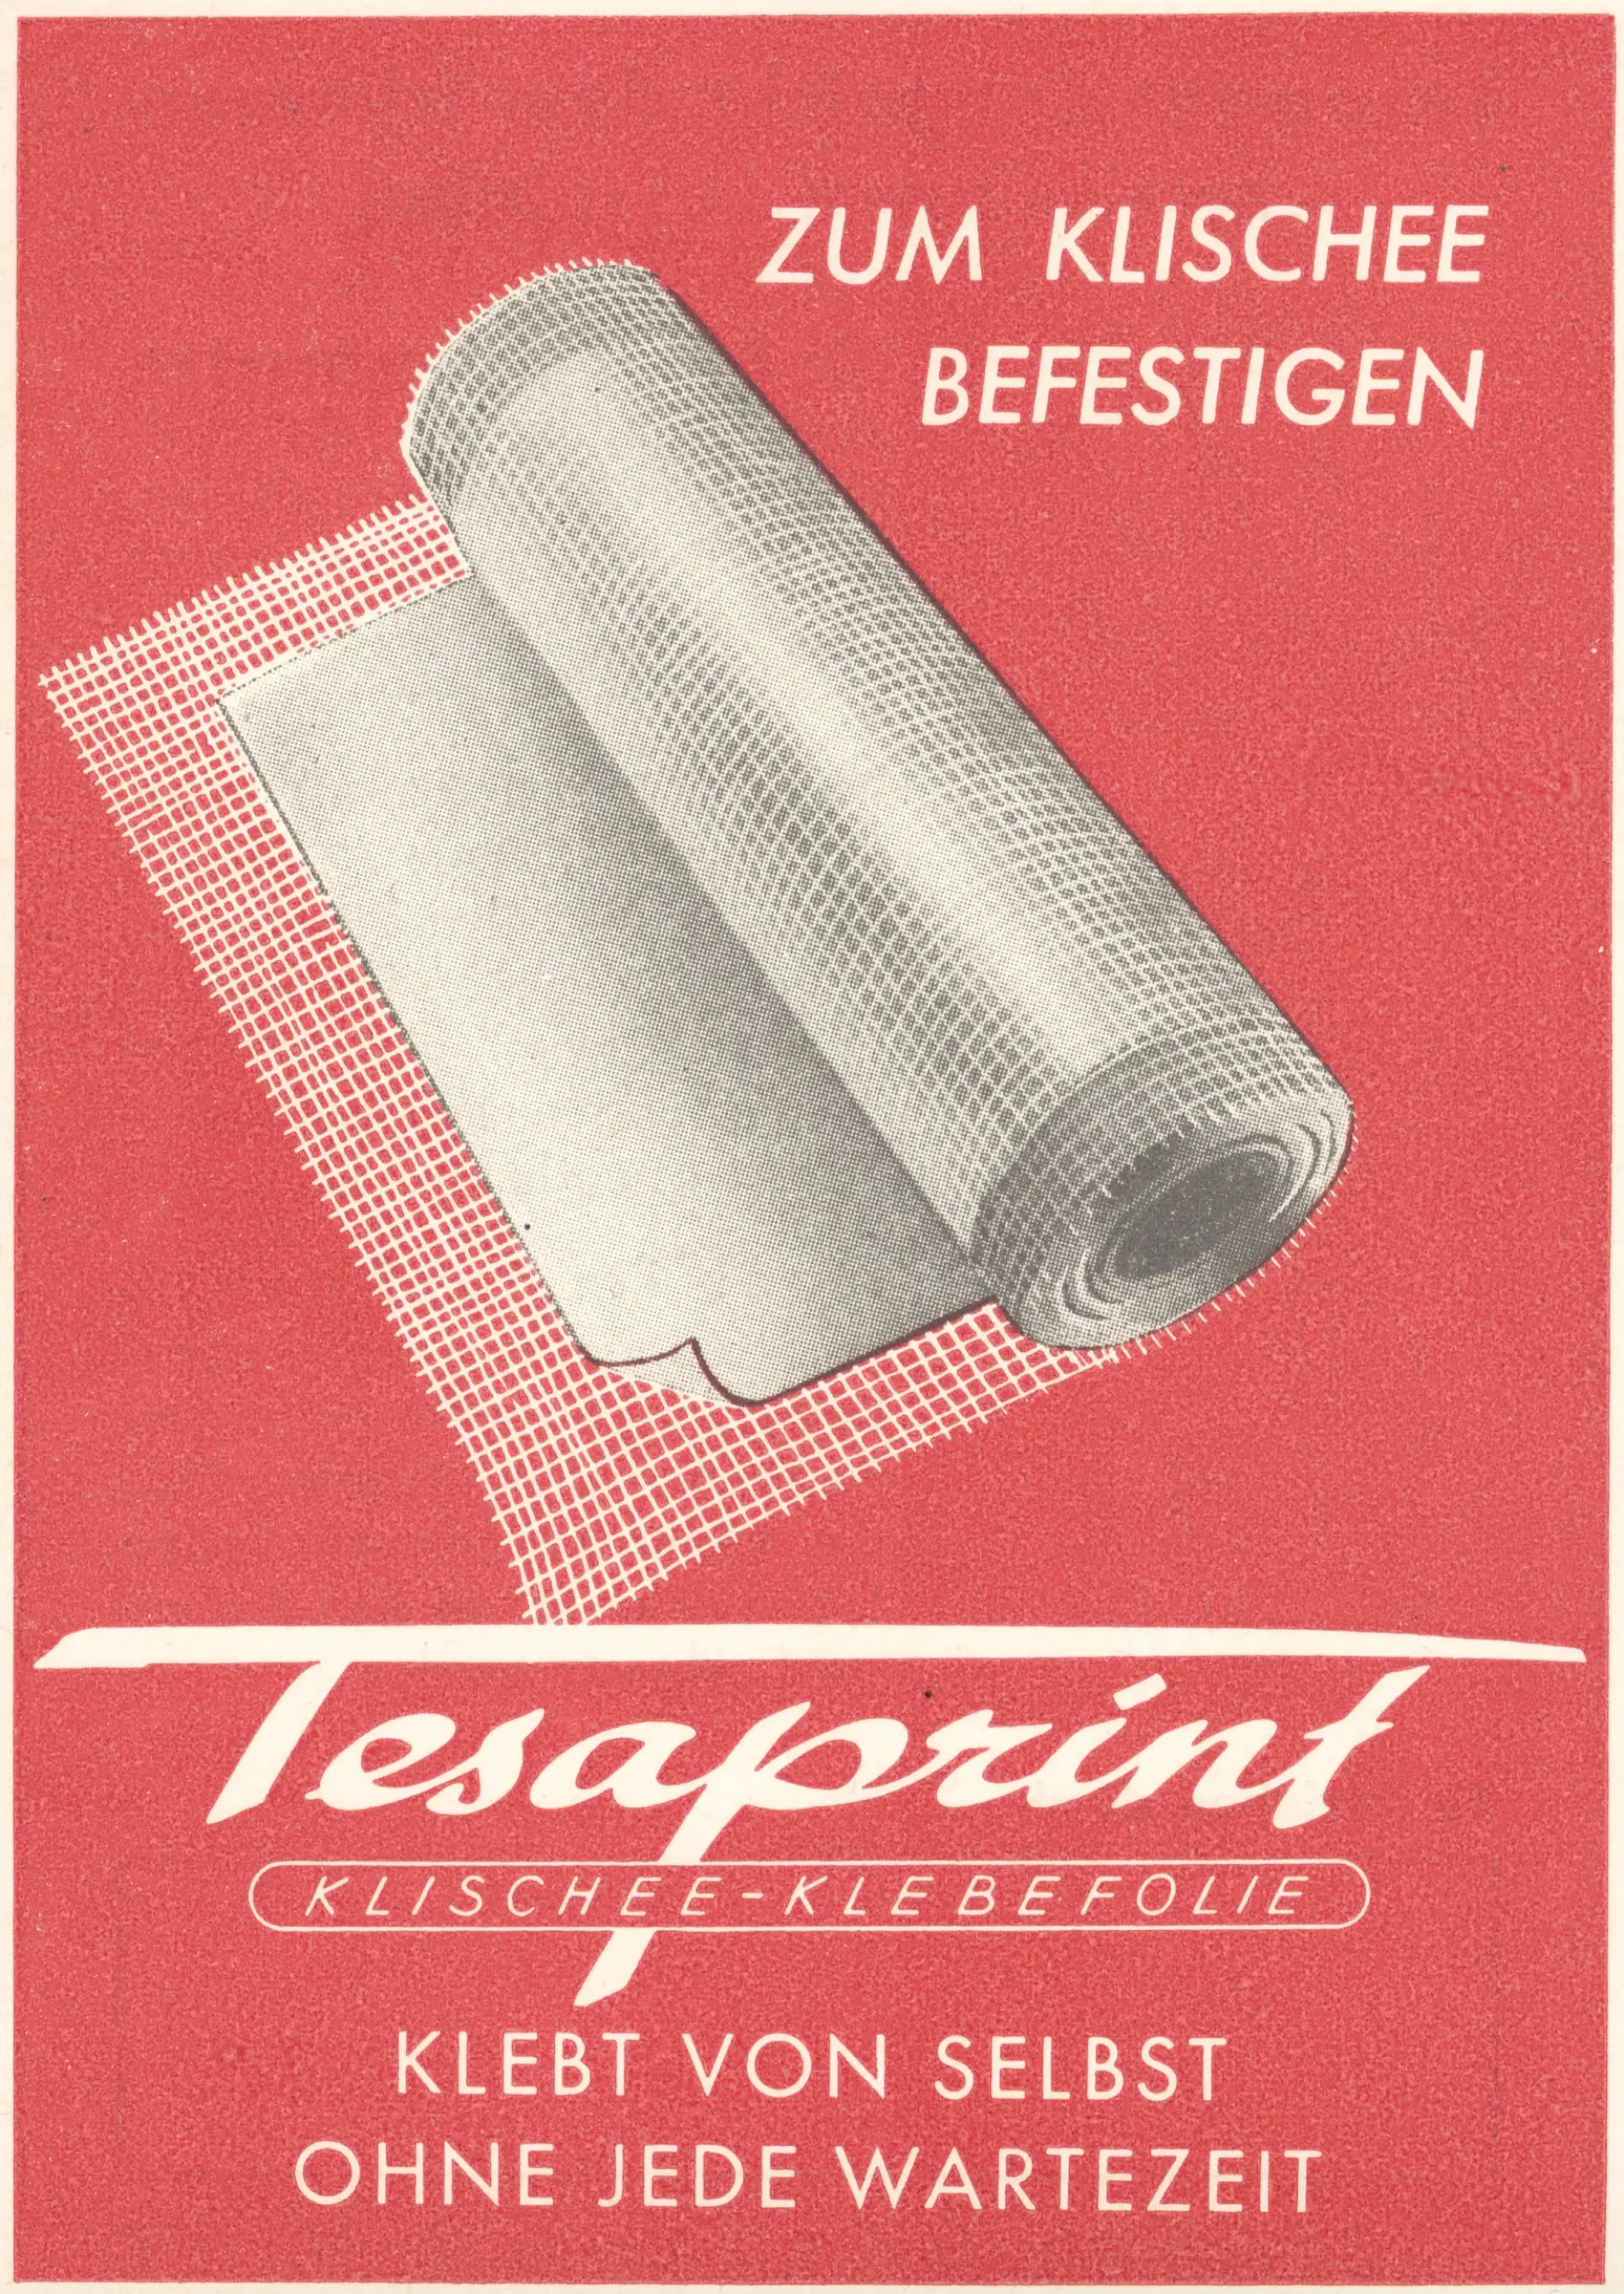 tesaprint 1950